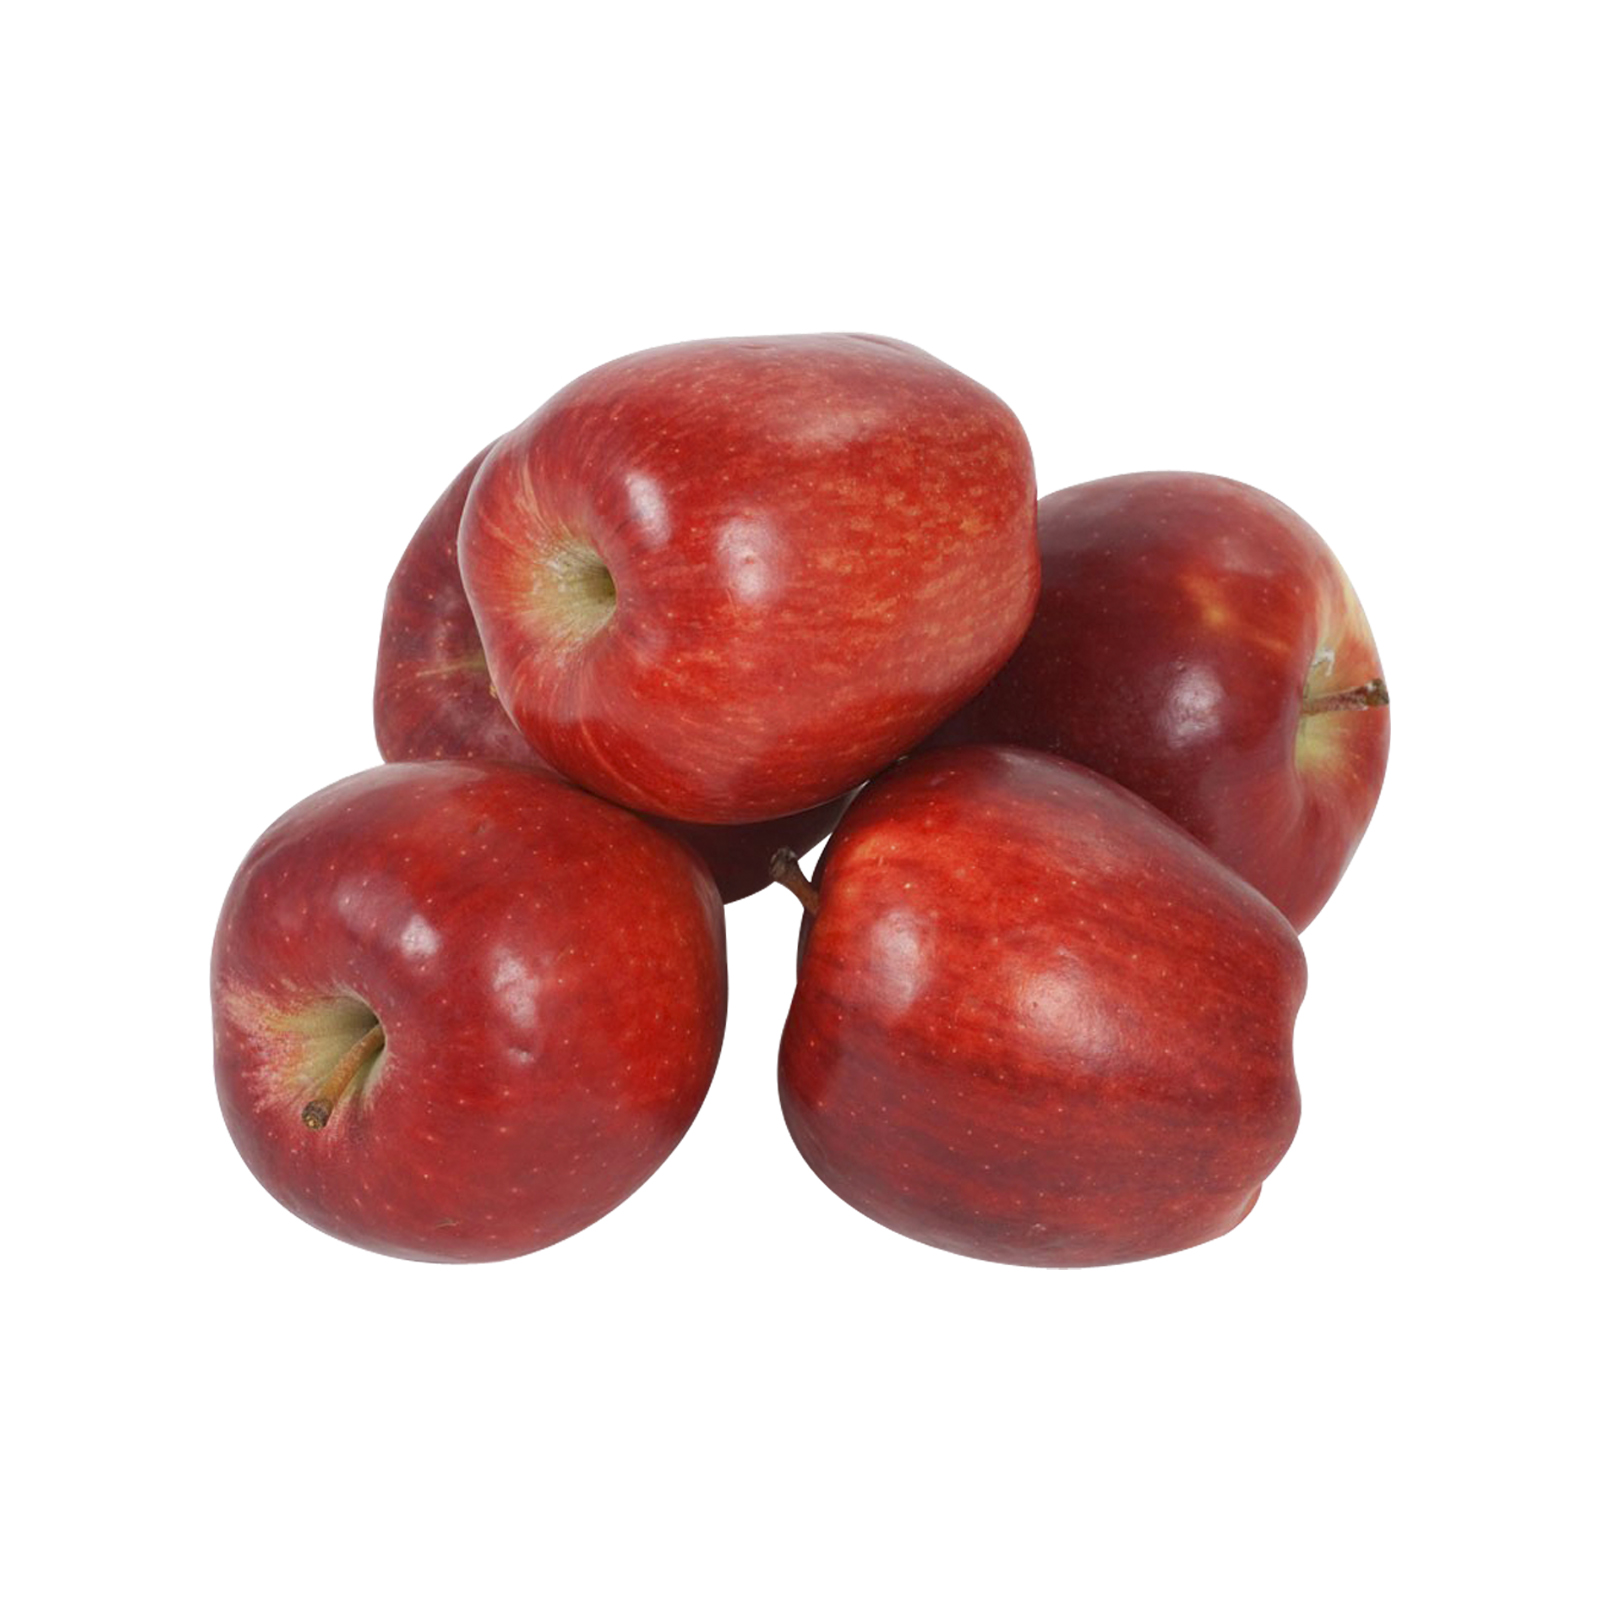 سیب قرمز - 15 کیلوگرم